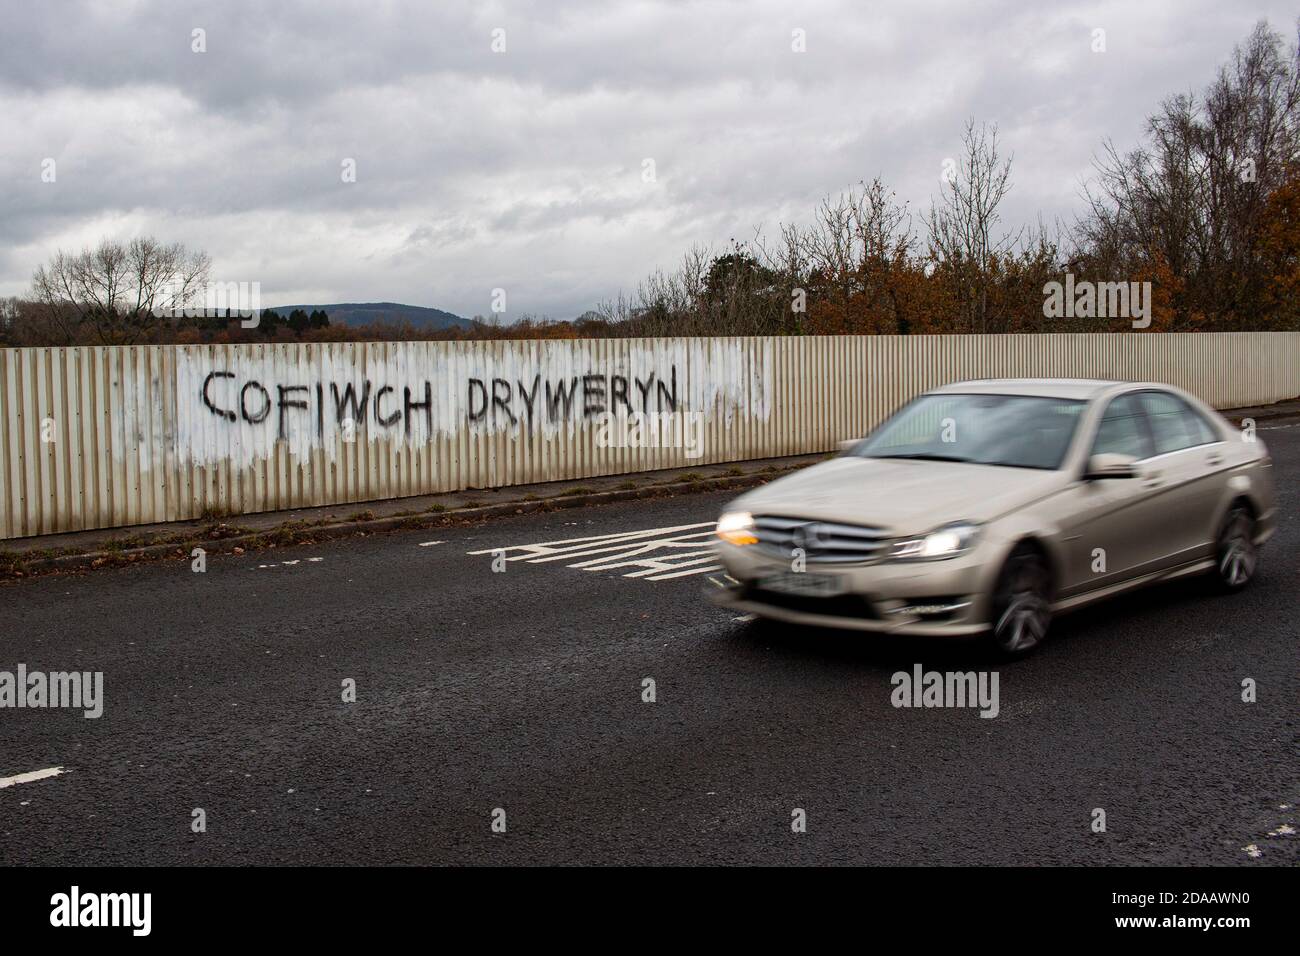 Cardiff, Galles, Regno Unito. 11 Nov 2020. Un messaggio recita 'Cofiwch Dryweryn' - Ricordati Tryweryn su un ponte vicino a Hensol, Galles. Credito: Lewis Mitchell Foto Stock